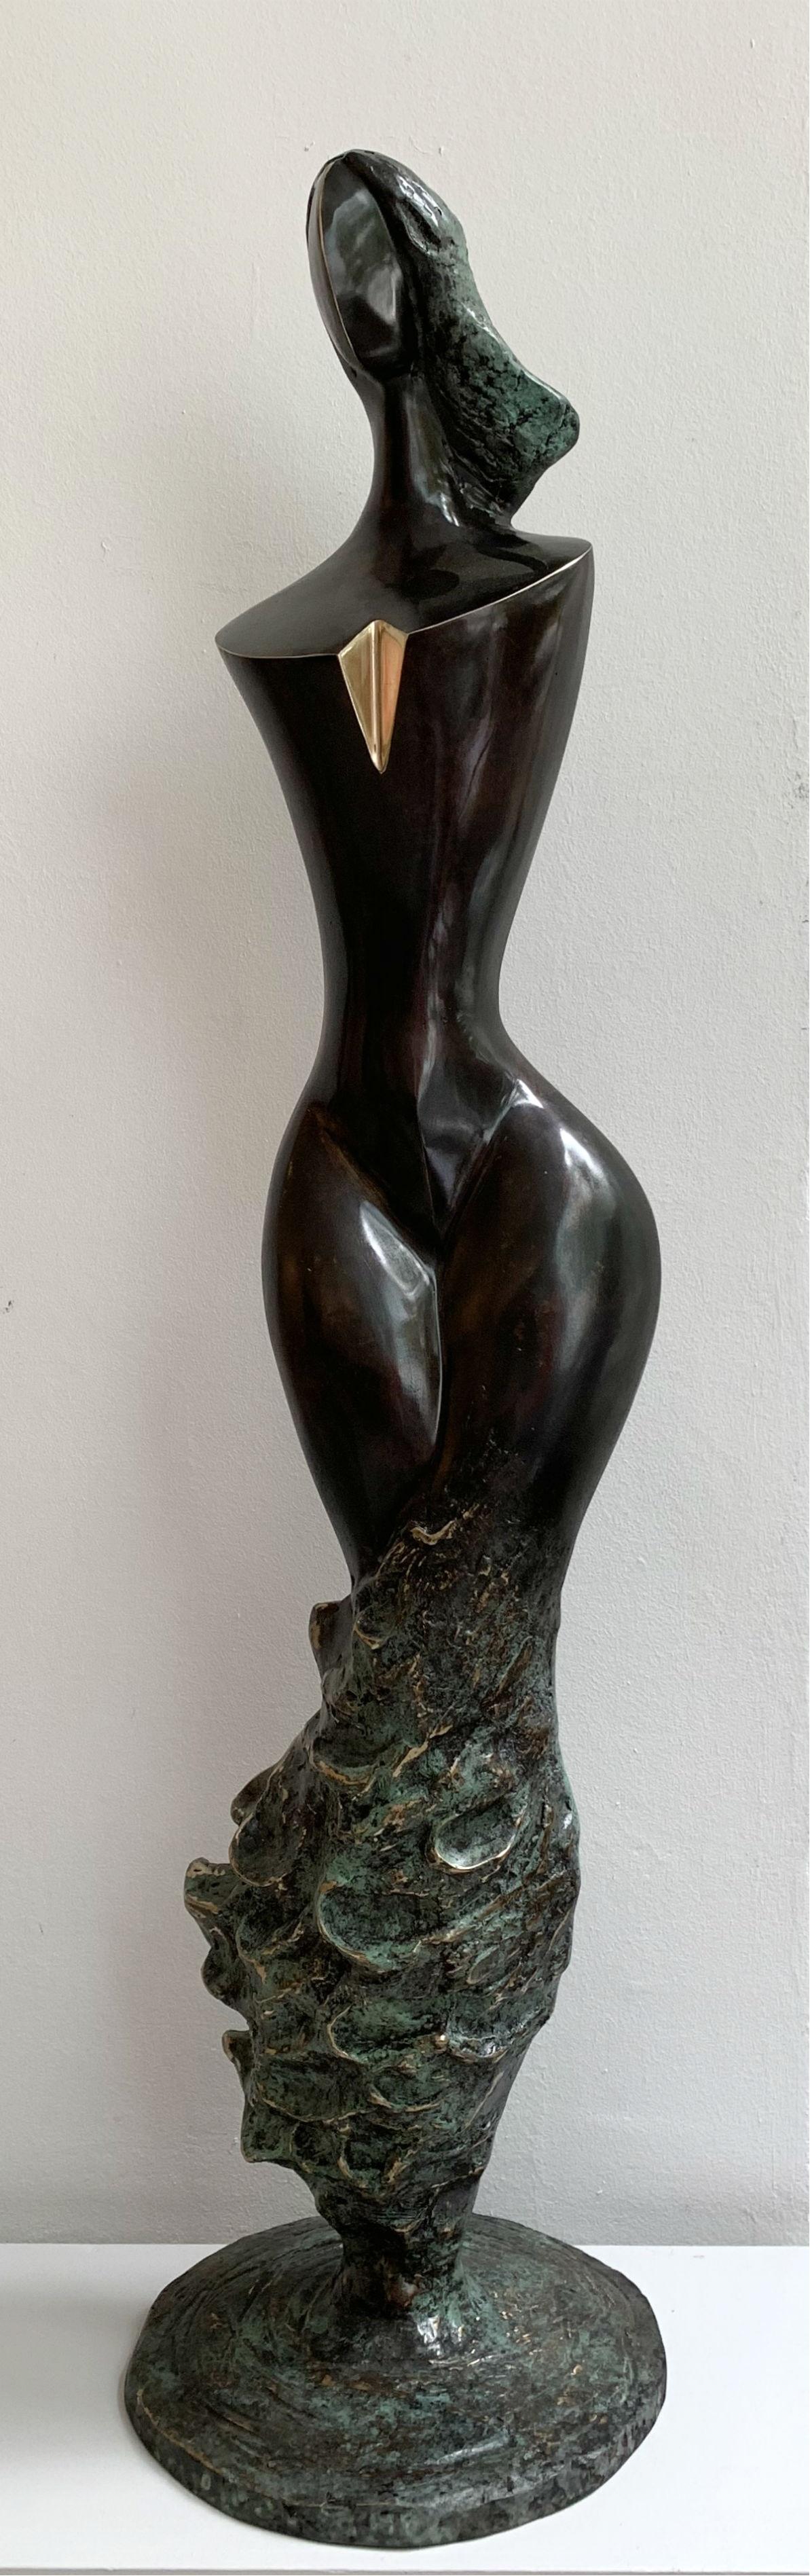 Stanisław Wysocki Figurative Sculpture - Wave venus - XXI century Contemporary bronze sculpture, Abstract & figurative